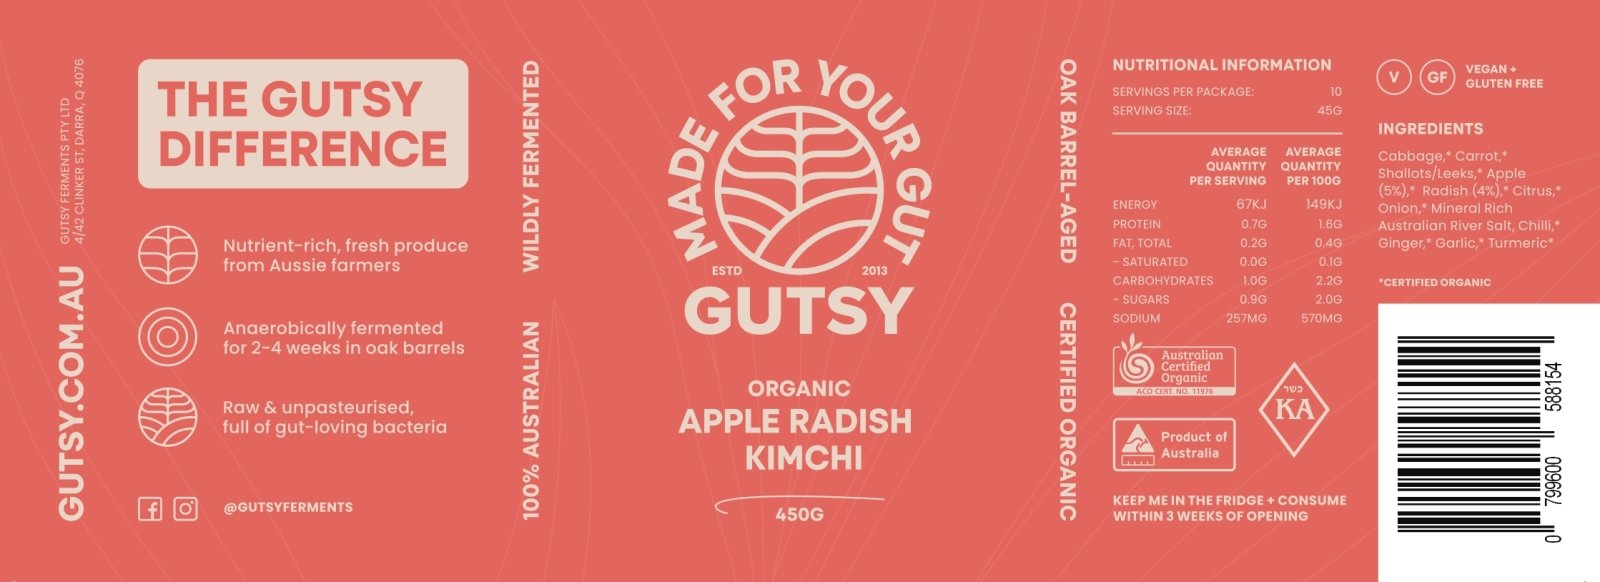 Organic Probiotic Apple Radish Kimchi